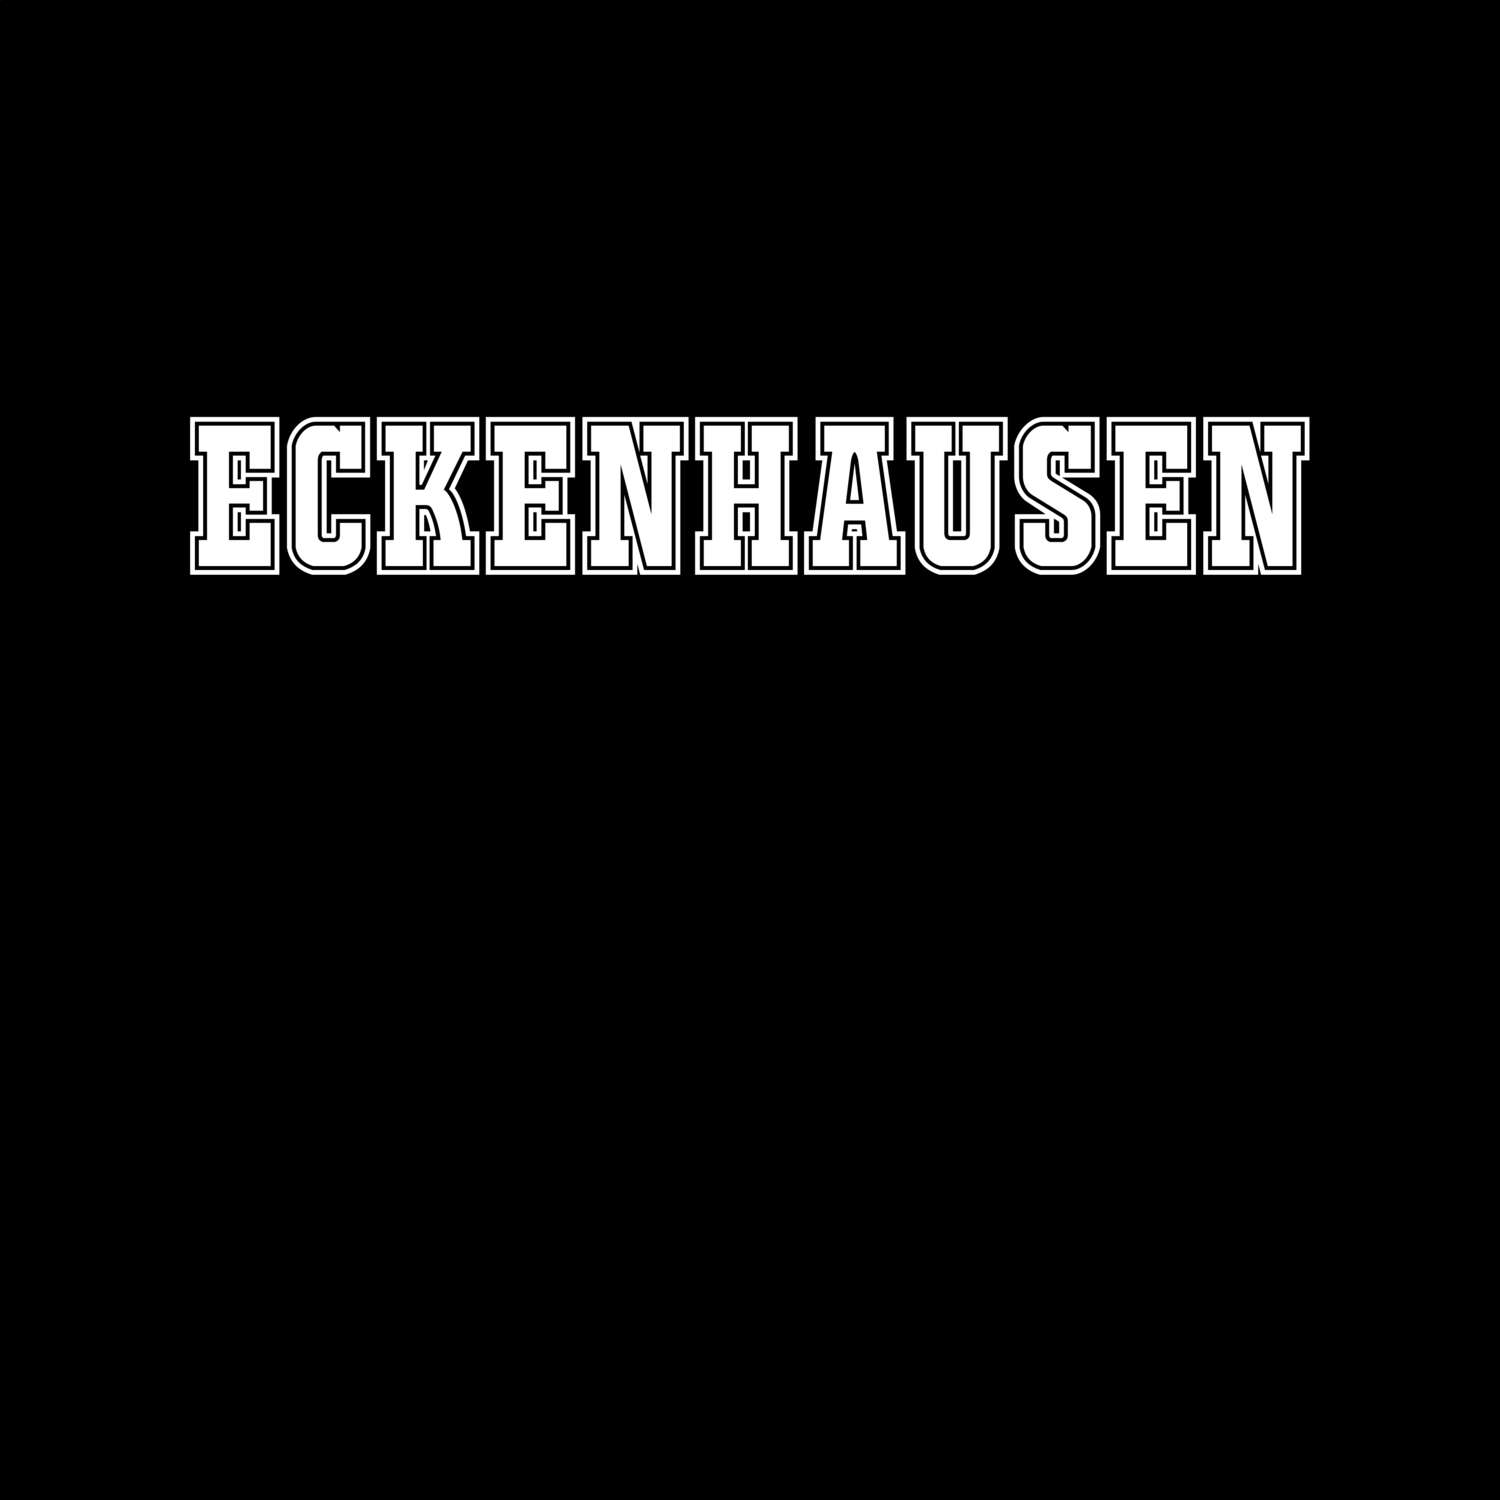 Eckenhausen T-Shirt »Classic«